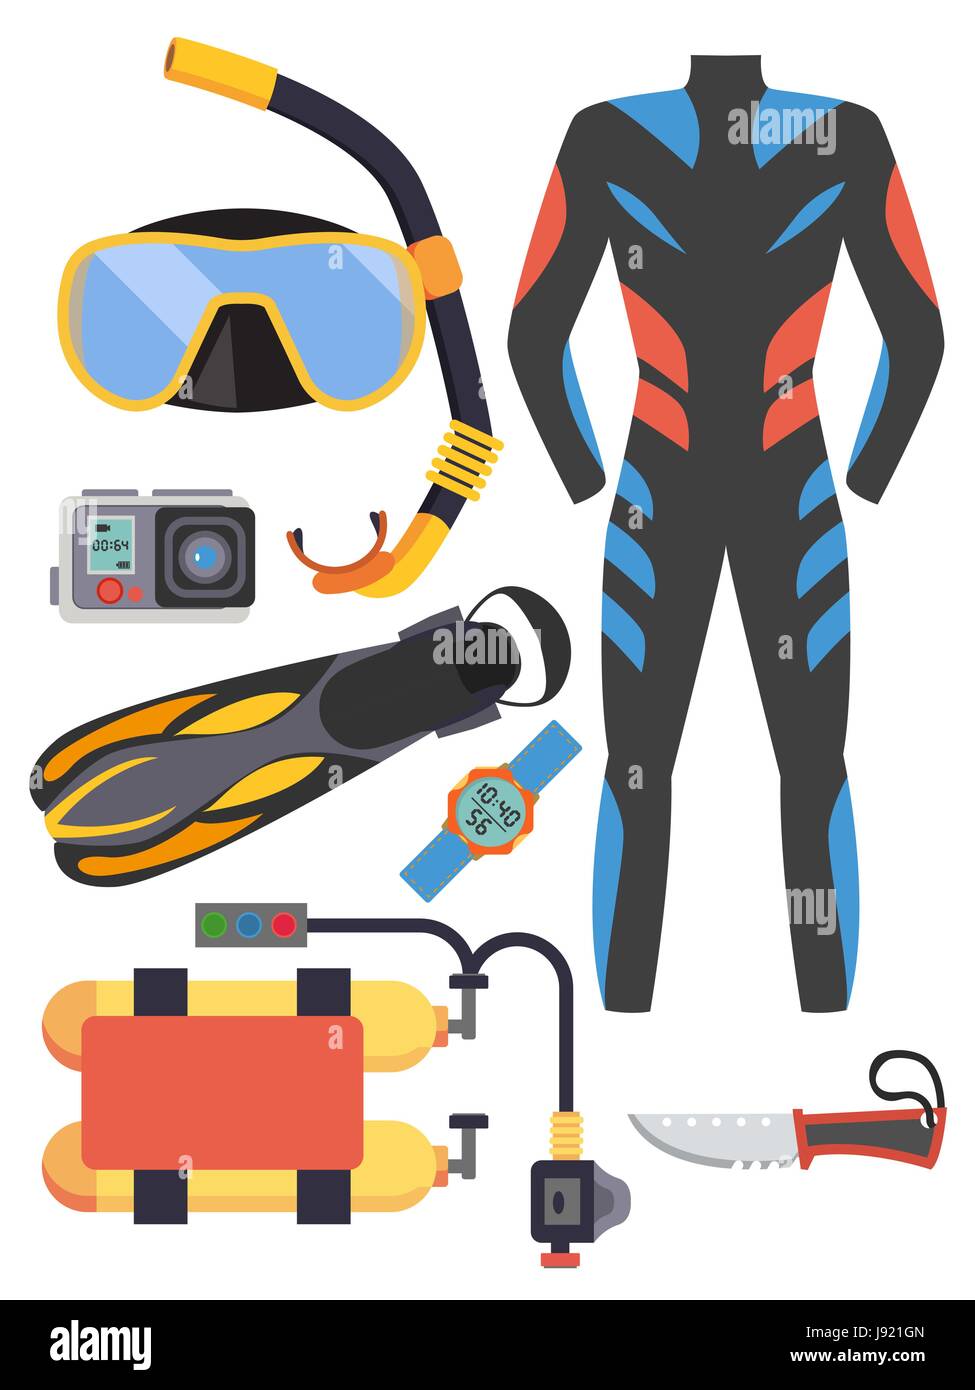 Lo snorkeling e scuba diving set di elementi. Scuba diving gear isolato. Muta subacqueo, scuba mask, snorkelling, pinne, regolatore dive icone. Attività subacquea Immersioni subacquee attrezzature e accessori. Illustrazione Vettoriale